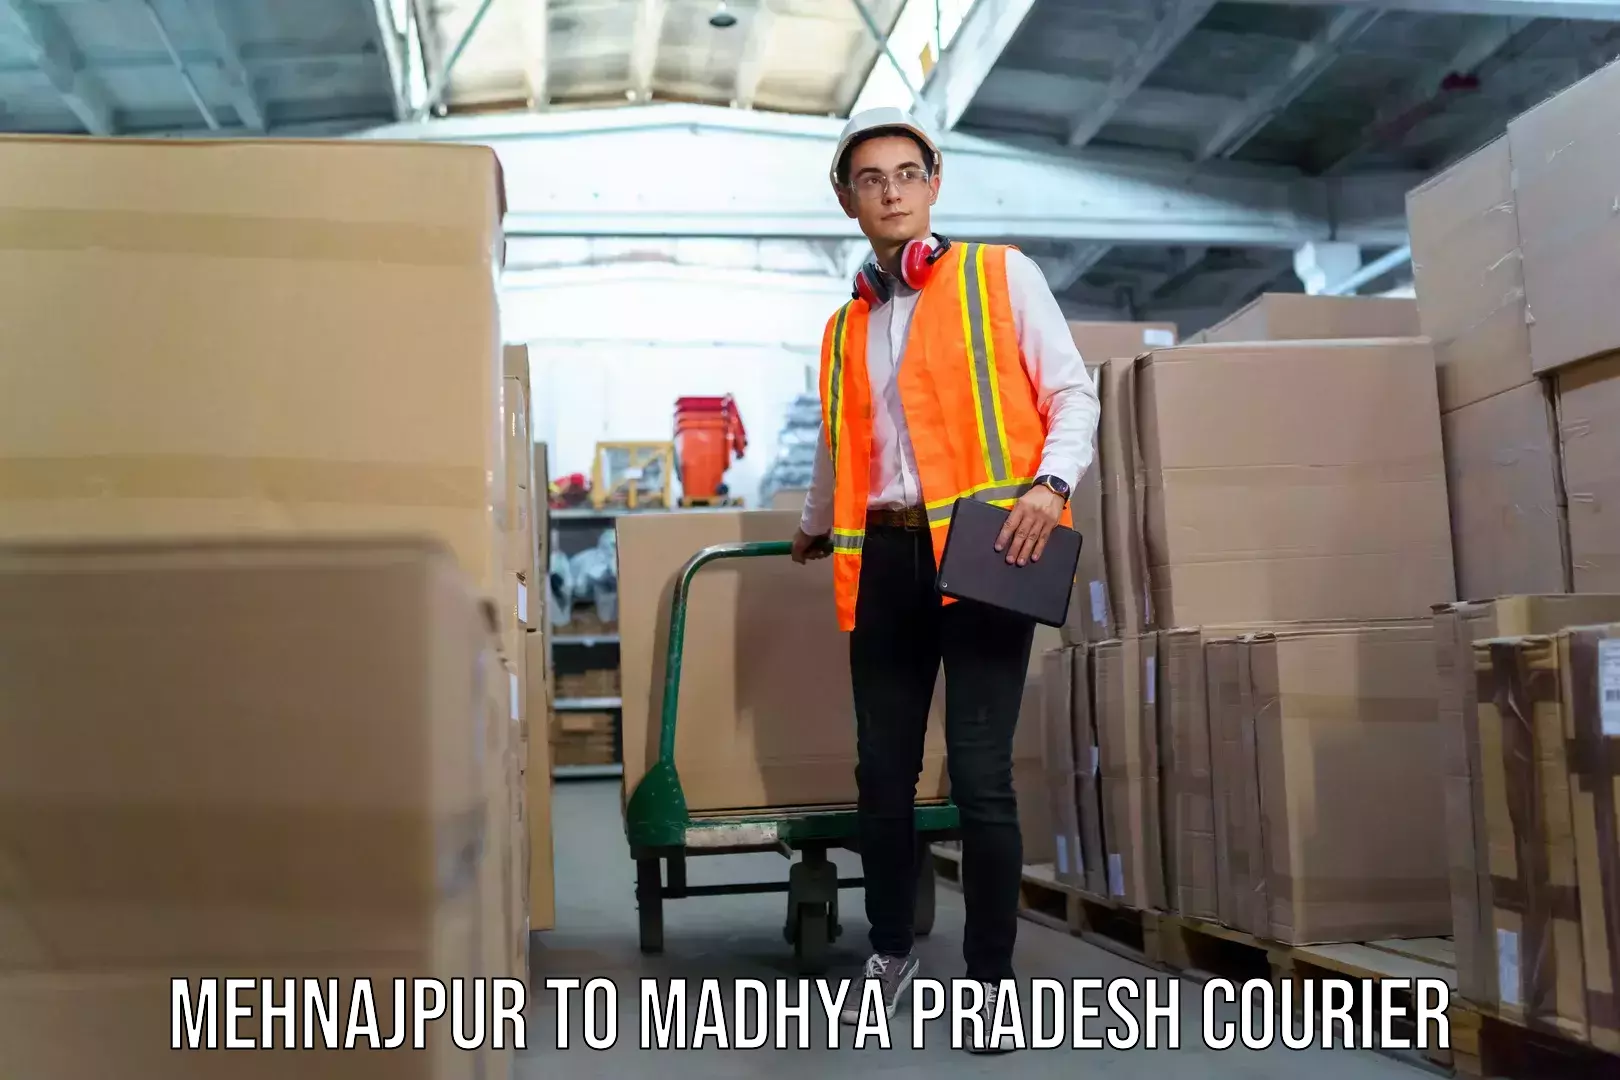 Luggage shipping service Mehnajpur to Hoshangabad